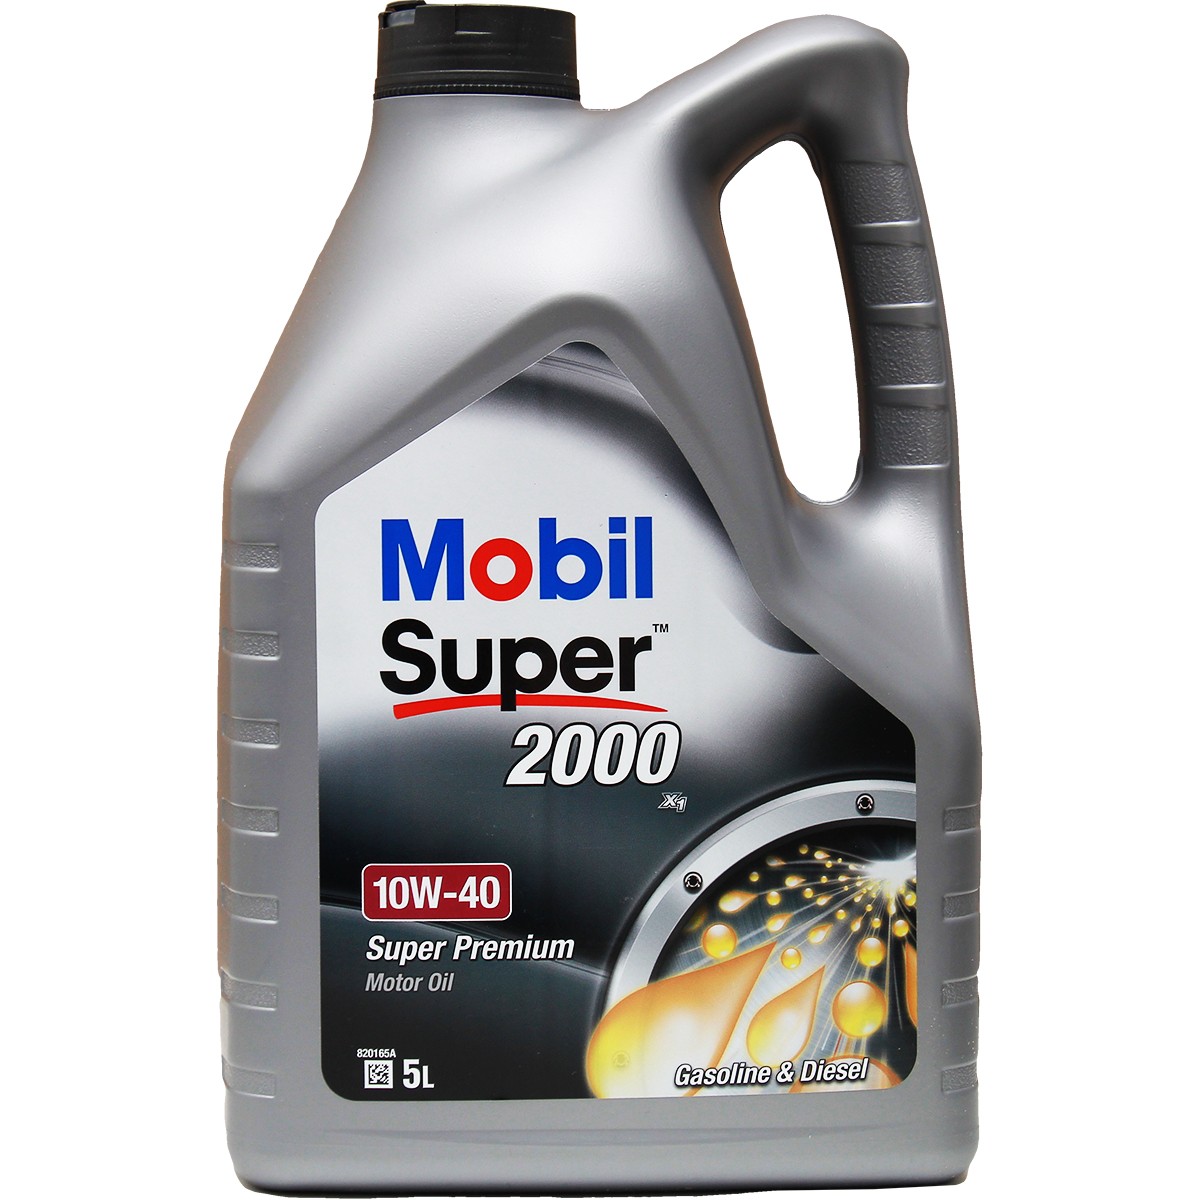 MOBIL Super, 2000 X1 150563 Motoröl 10W-40, 5l, Teilsynthetiköl